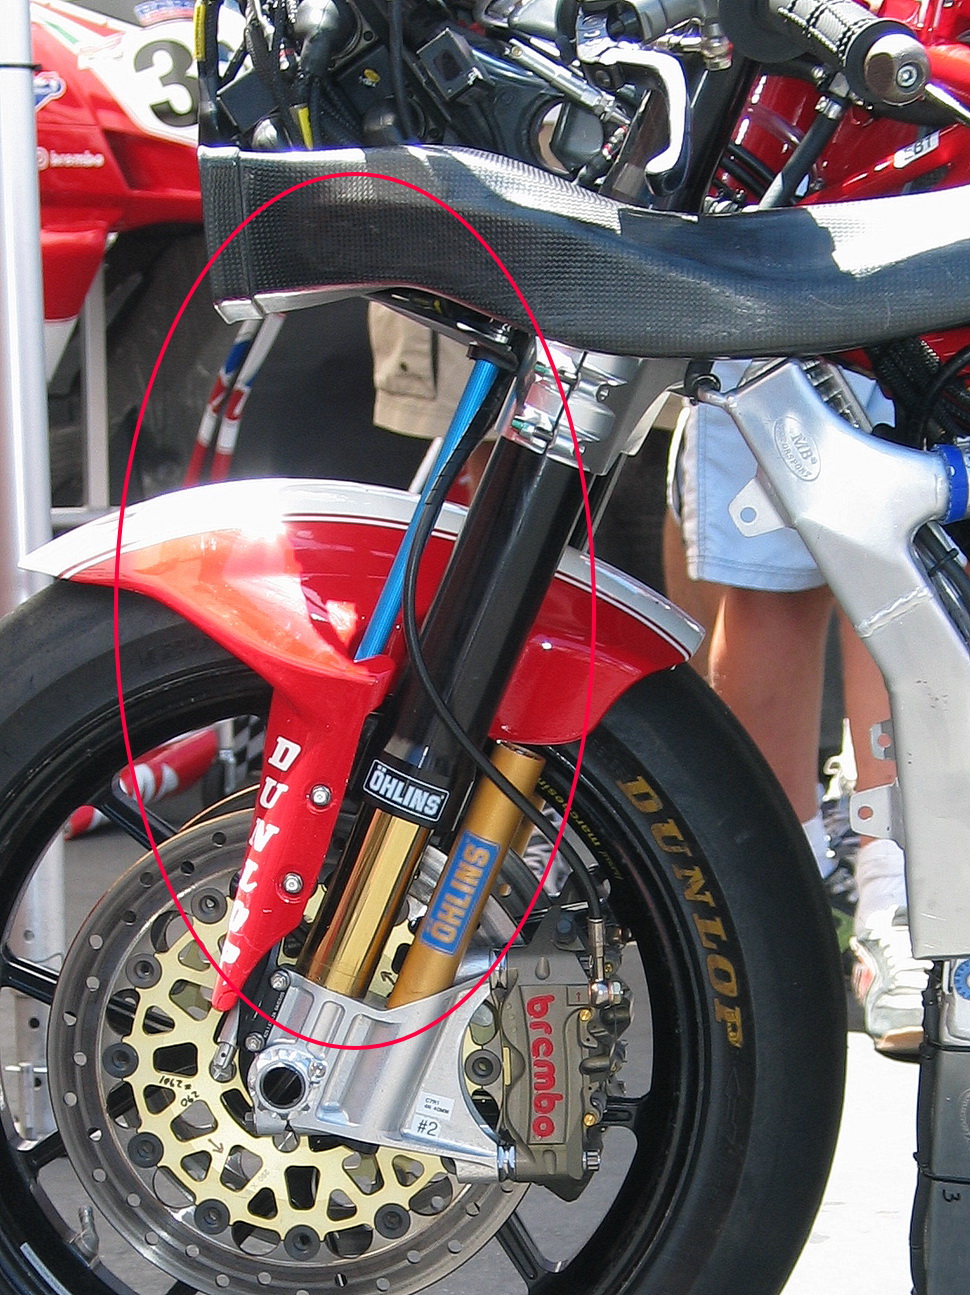 Линейный датчик хода подвески на вилке OHLINS супербайка Ducati